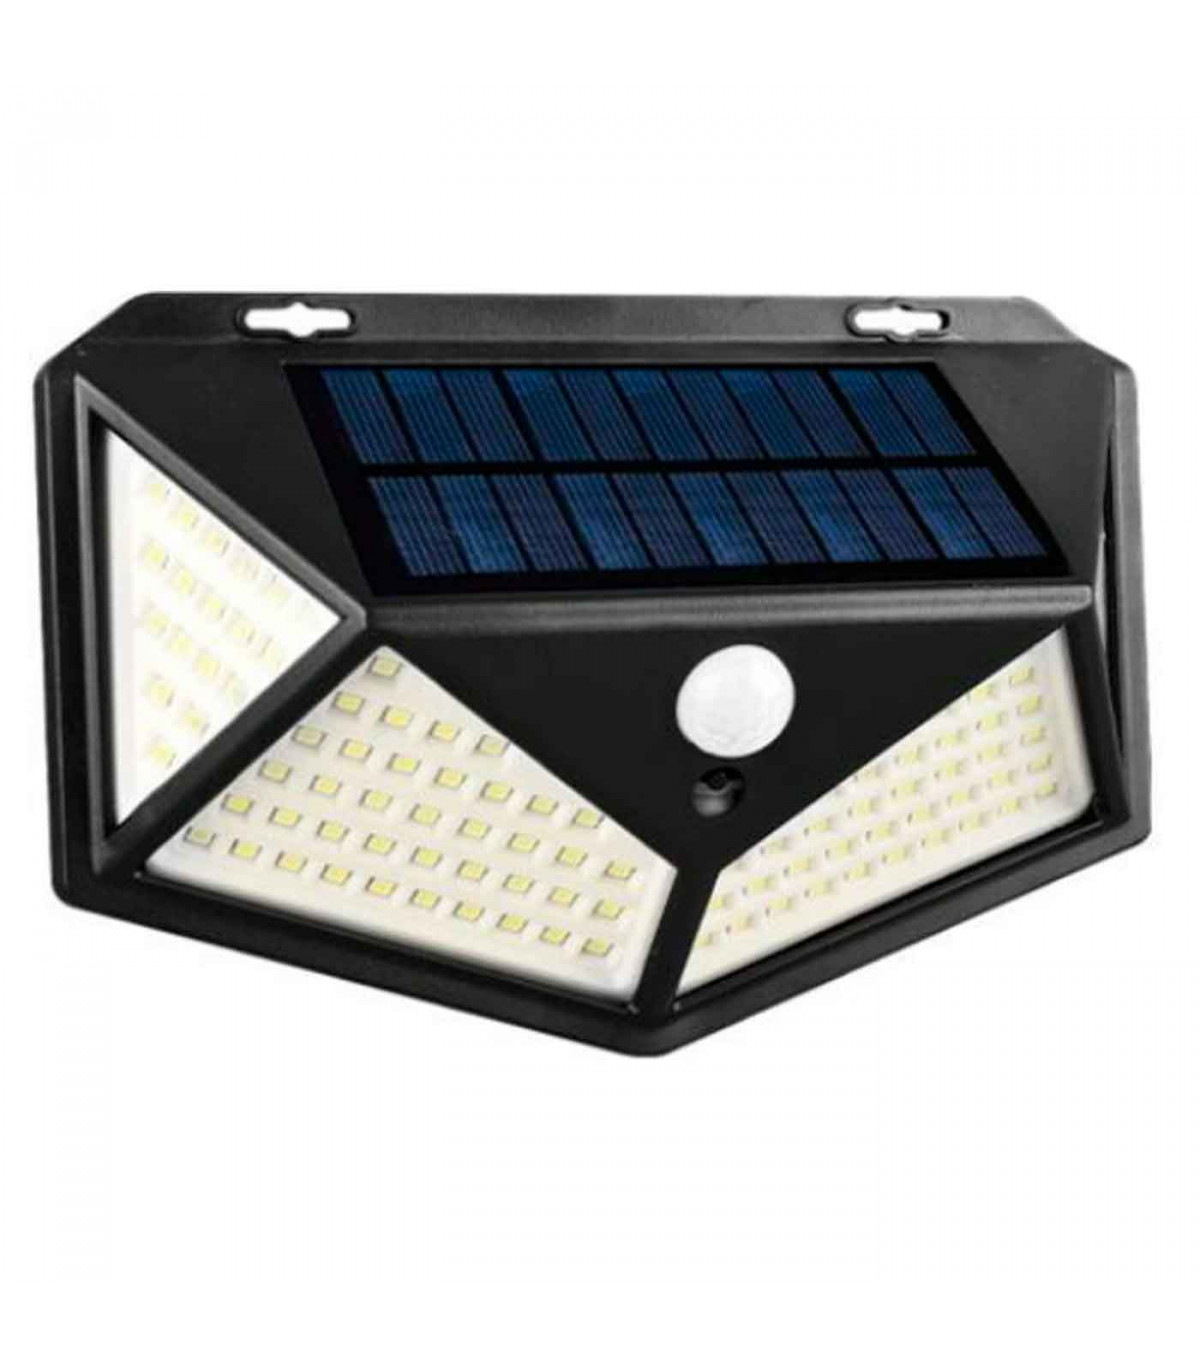 https://tradineur.com/45386-superlarge_default/lampara-luces-led-de-exterior-30-w-funciona-conluz-solar-carga-automatica-funcion-nocturna-facil-instalacion-sensor-de-movimient.jpg